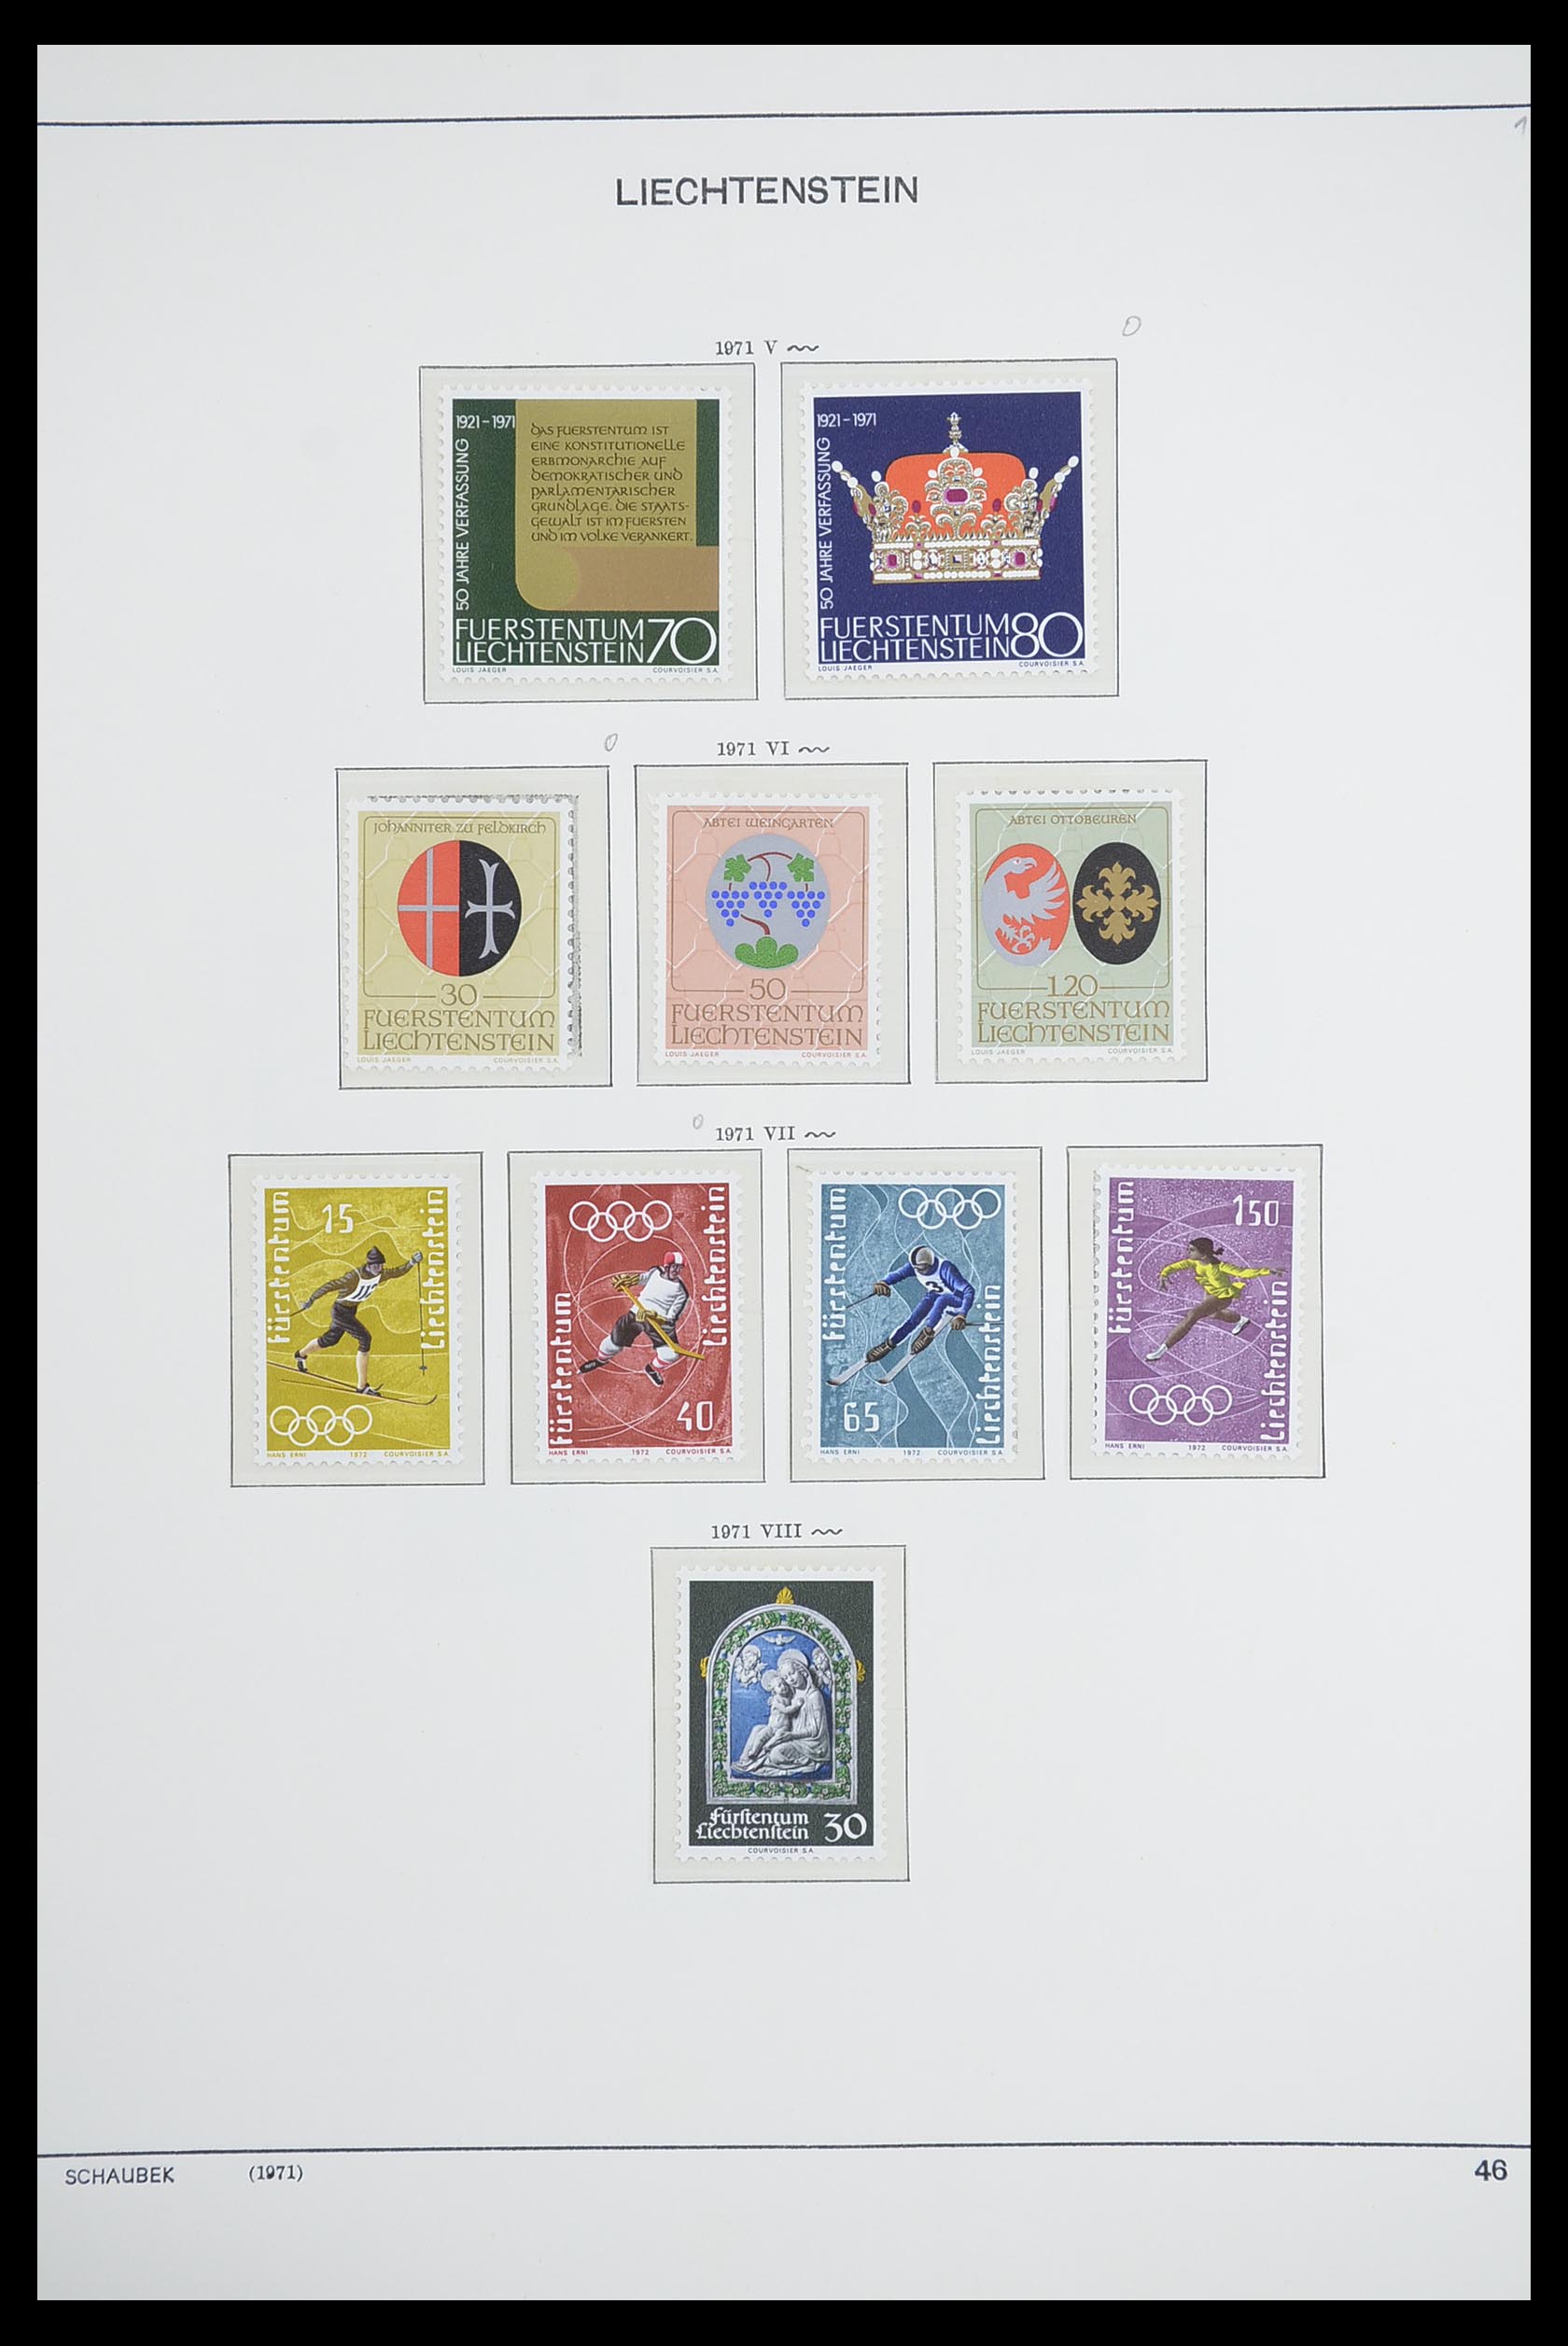 33274 054 - Stamp collection 33274 Liechtenstein 1912-1996.